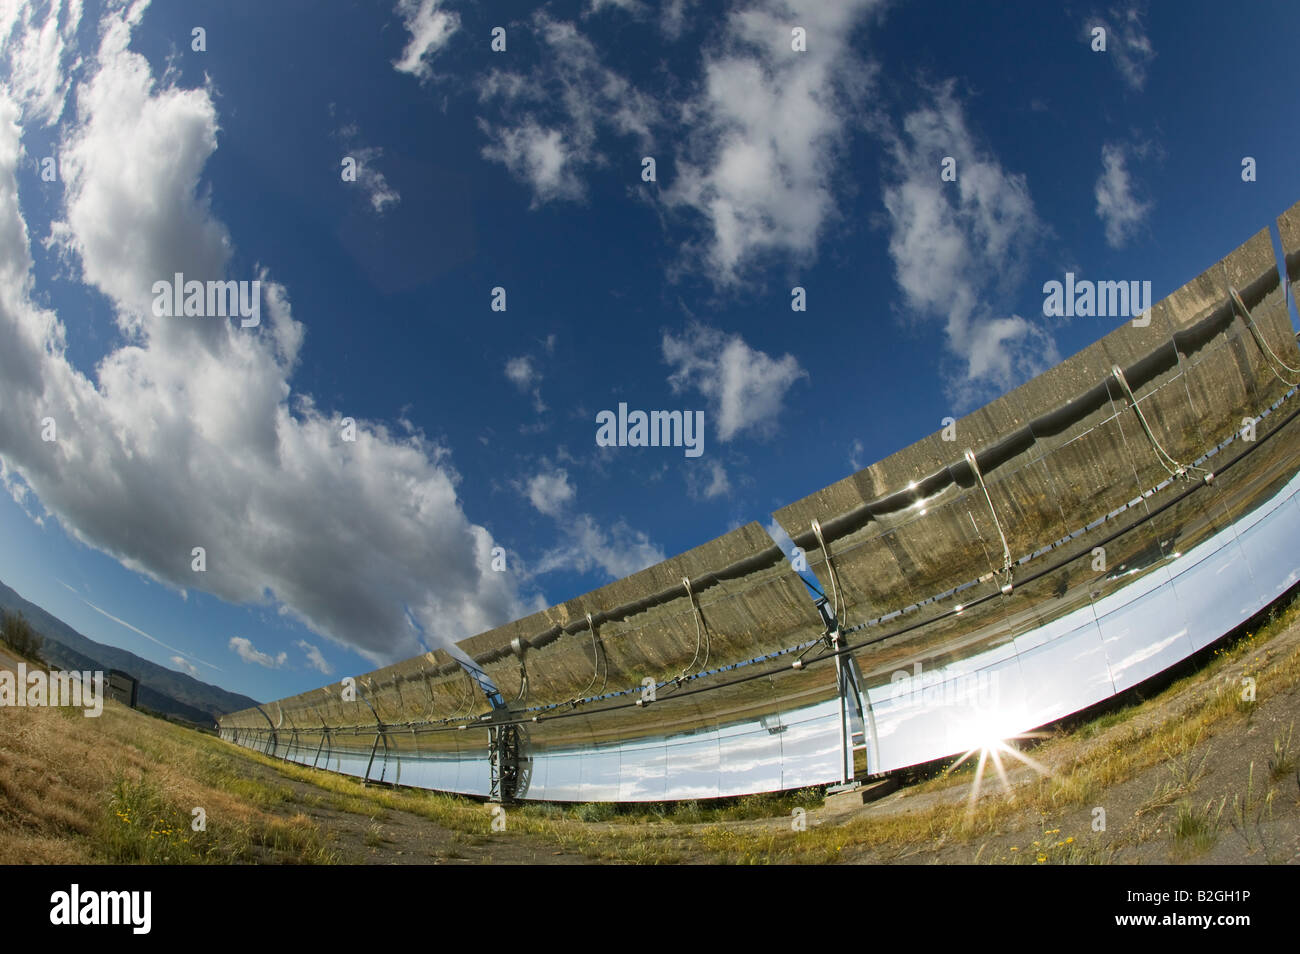 Solare trogolo parabolico prototipo, Ciemat, Plataforma Solar de Almaria, Andalusia, Spagna Foto Stock